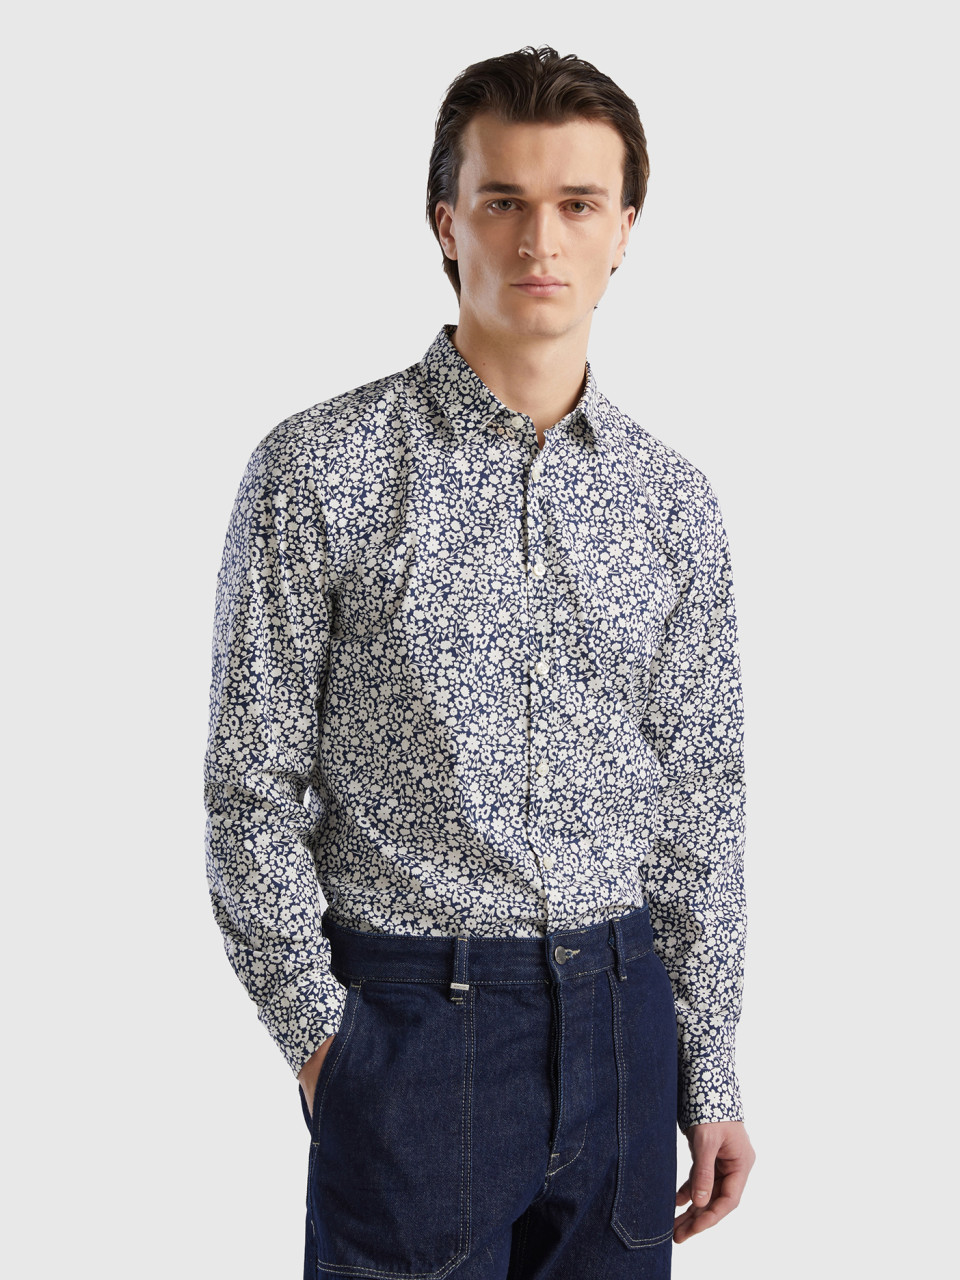 Benetton, Slim Fit Floral Shirt, Multi-color, Men